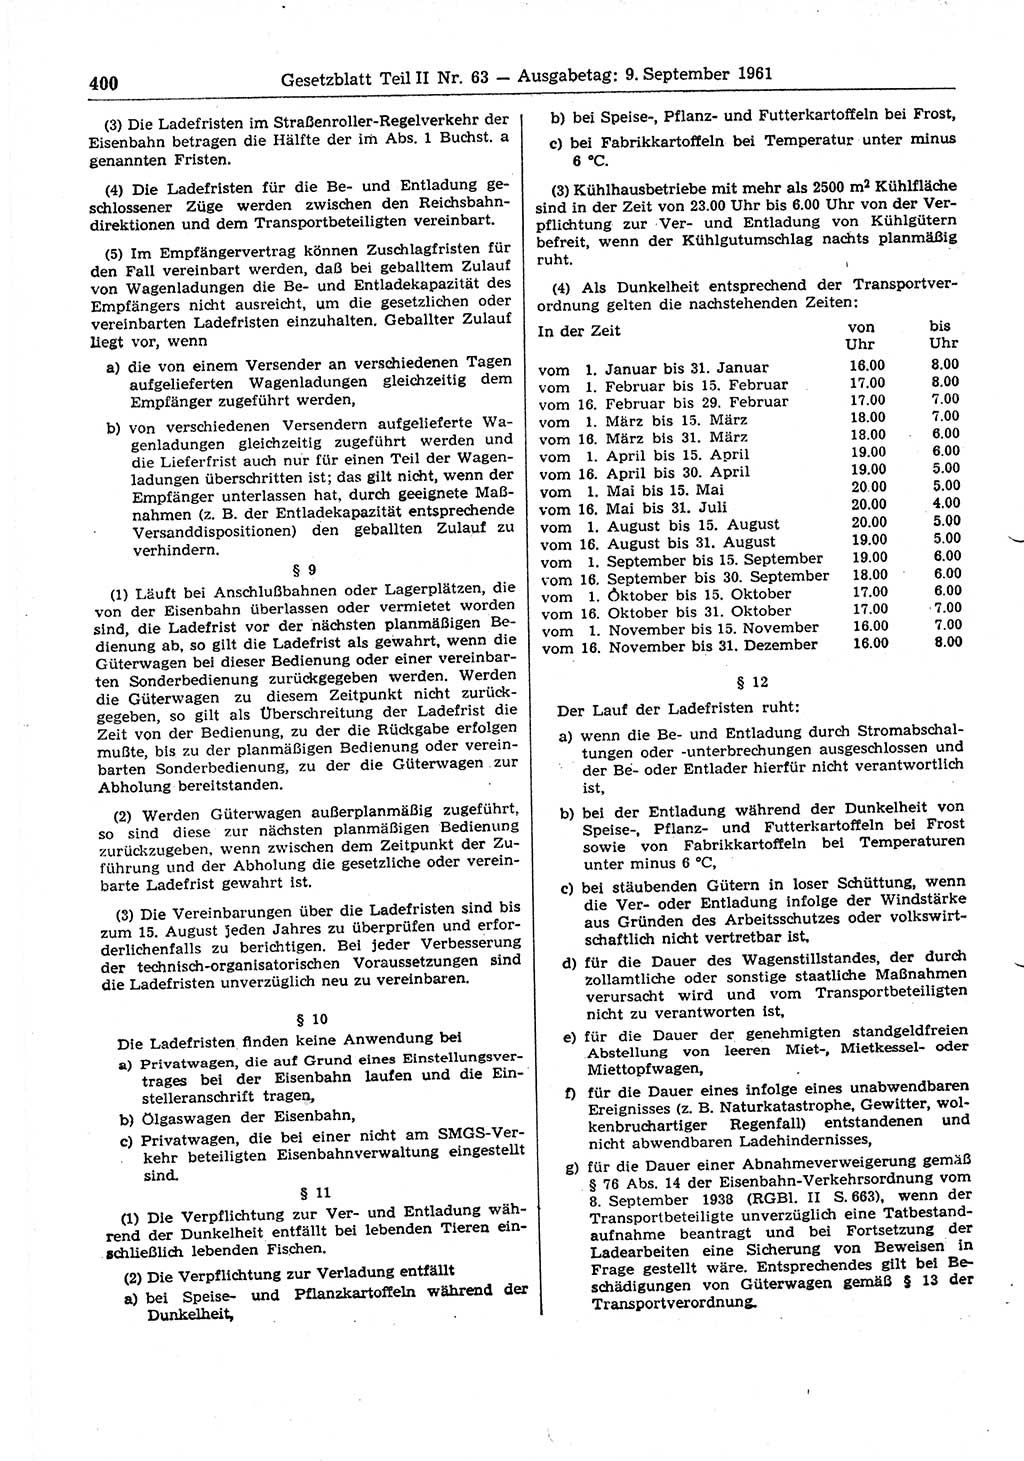 Gesetzblatt (GBl.) der Deutschen Demokratischen Republik (DDR) Teil ⅠⅠ 1961, Seite 400 (GBl. DDR ⅠⅠ 1961, S. 400)